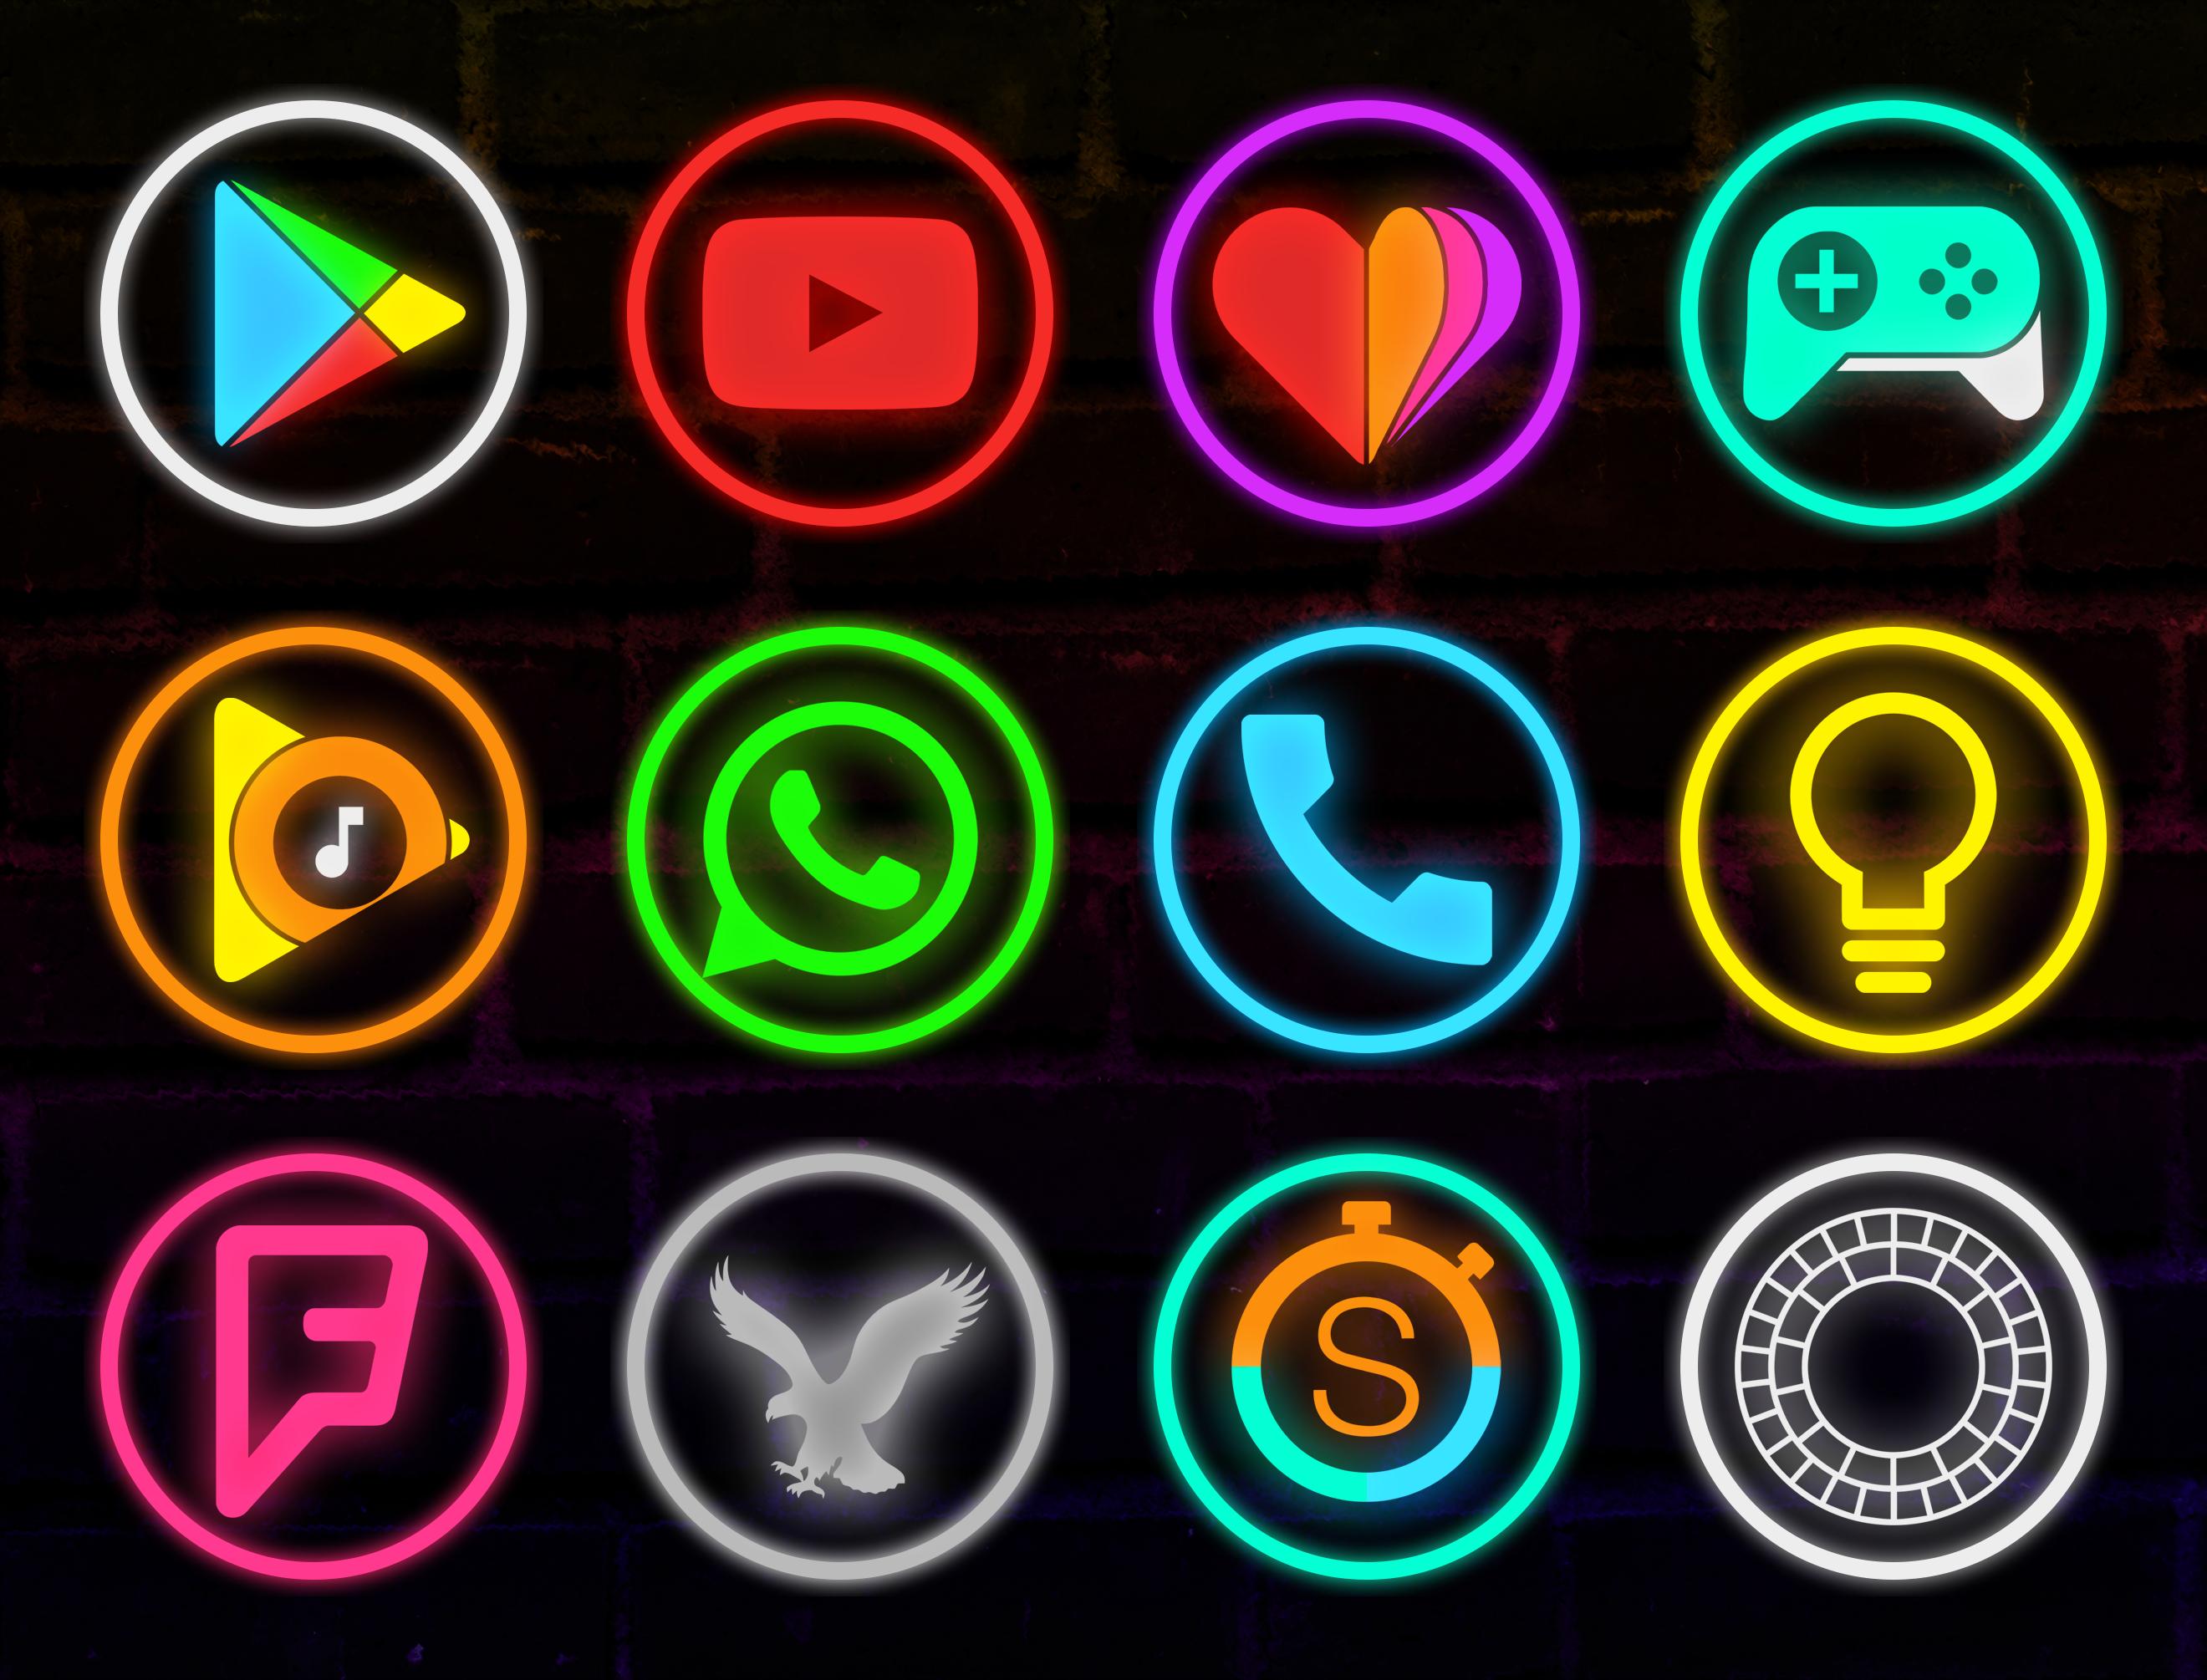 Neon icons